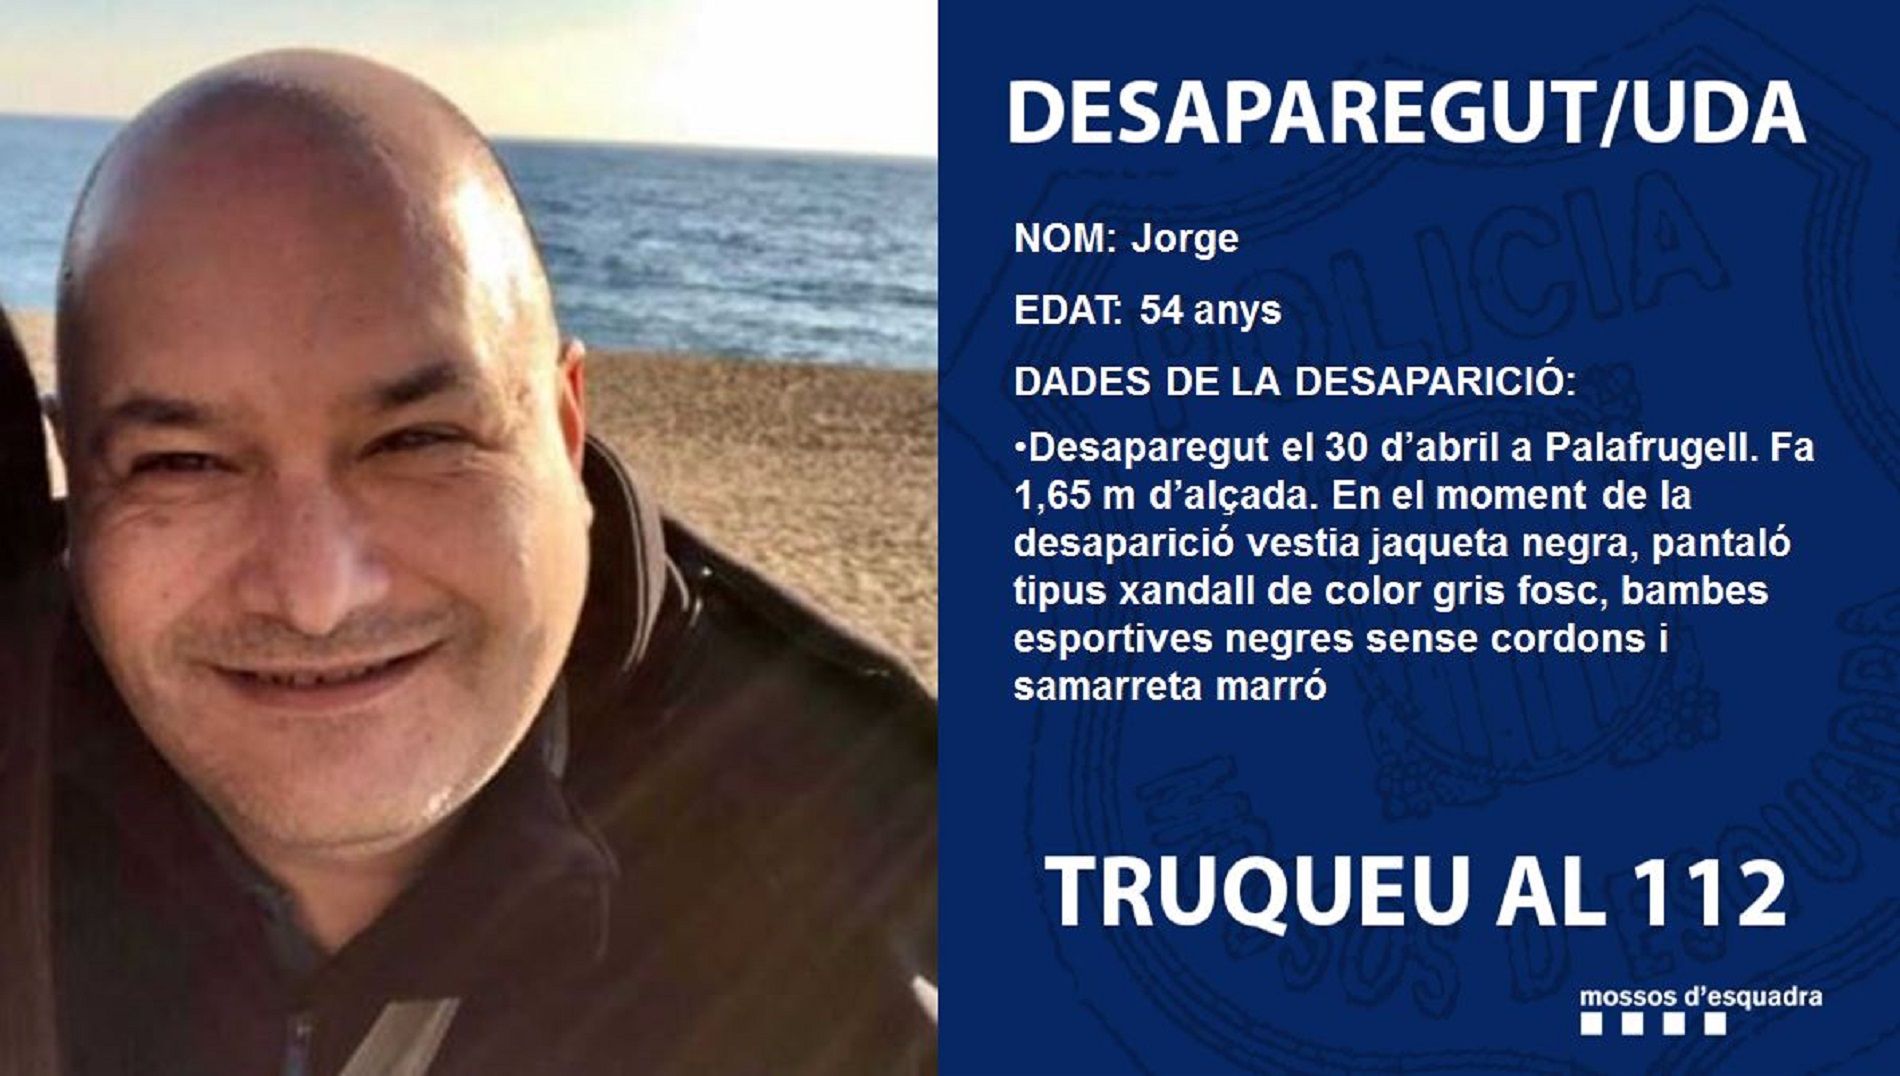 Jorge desaparecido / Mossos d'Esquadra